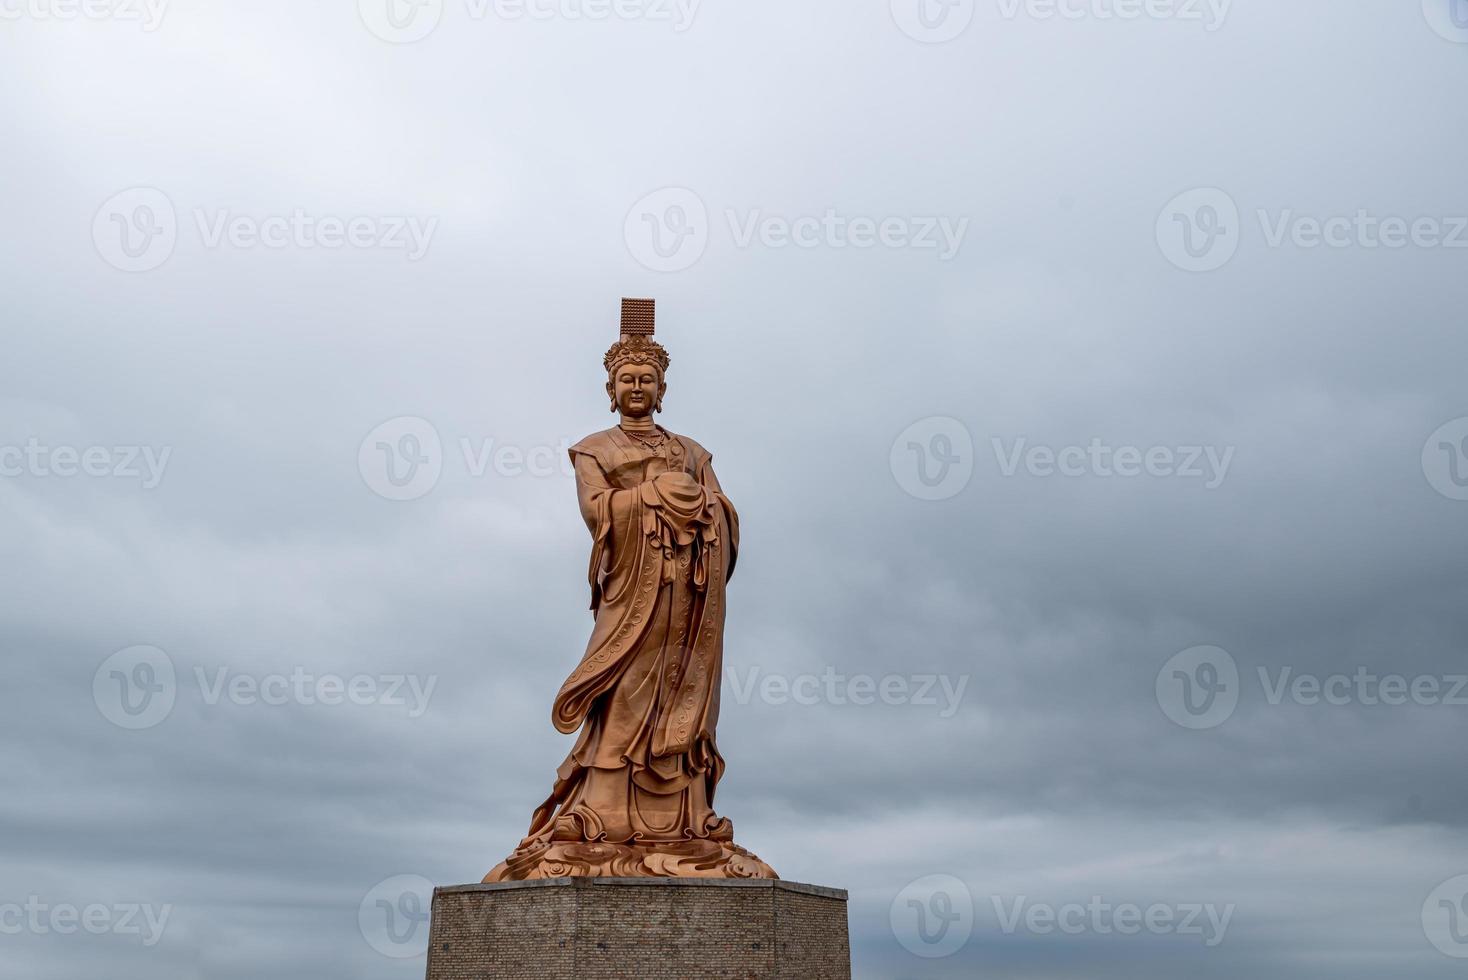 bronsstatyn av den kinesiska religiösa gudinnan i grumligt väder foto